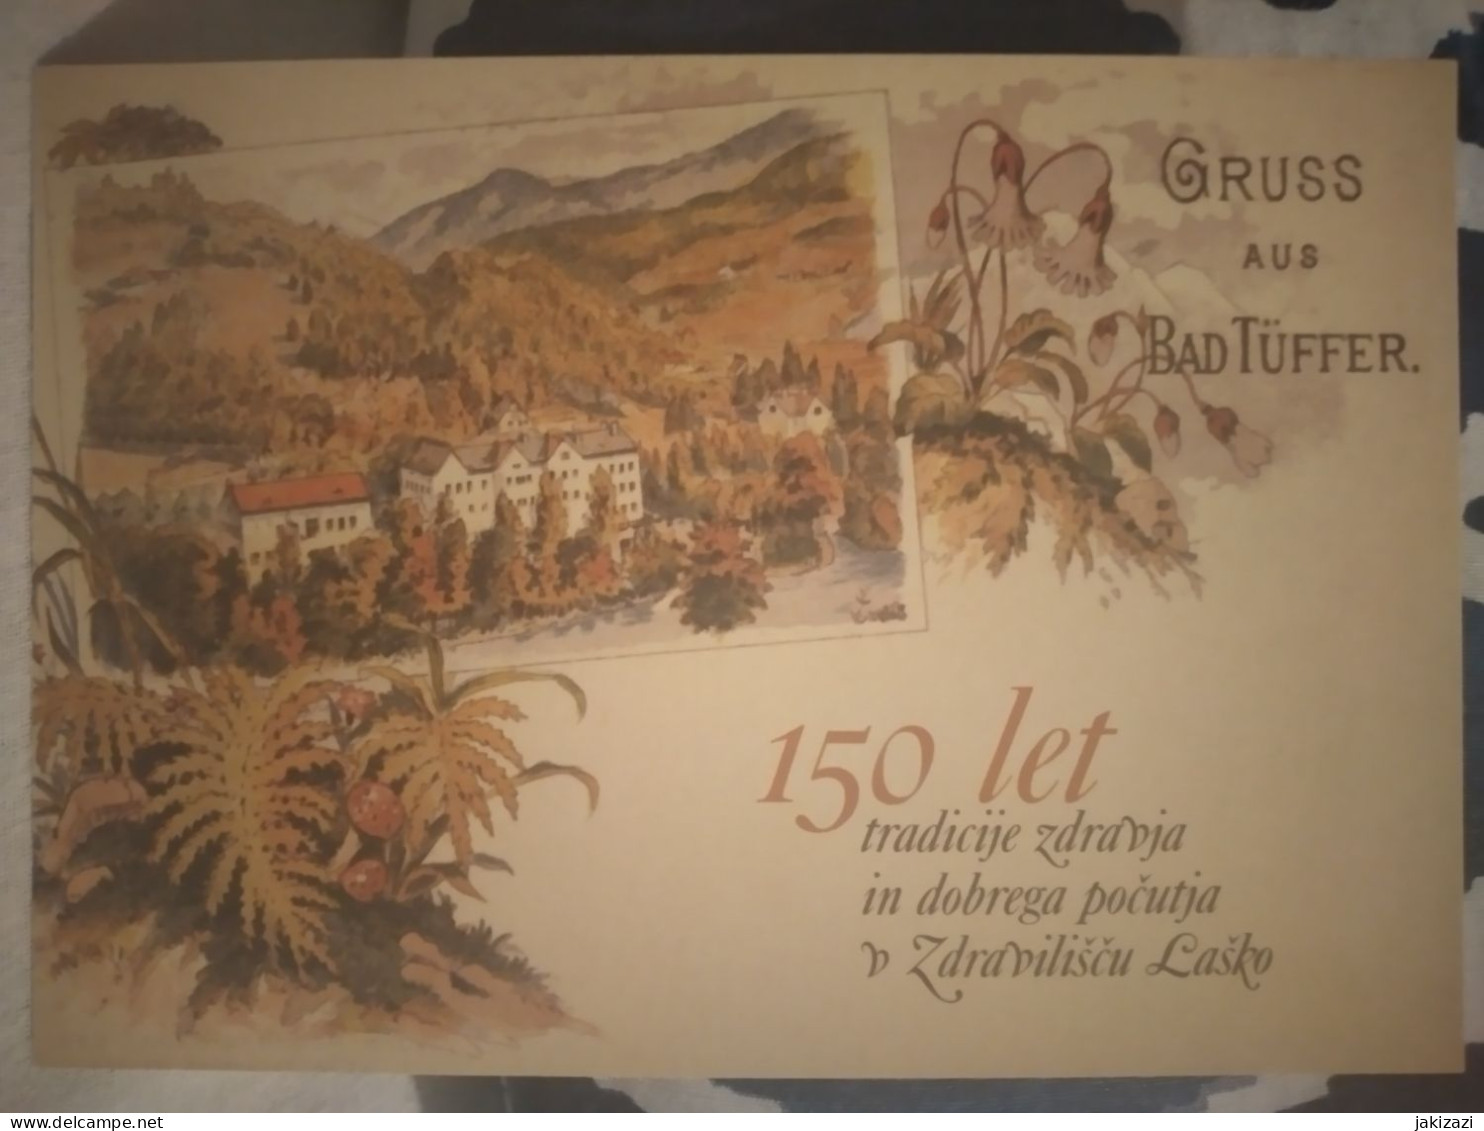 150 Years Of Healt Resort Laško. BadTuffer. SPA. Cartepostale. - Slowenien